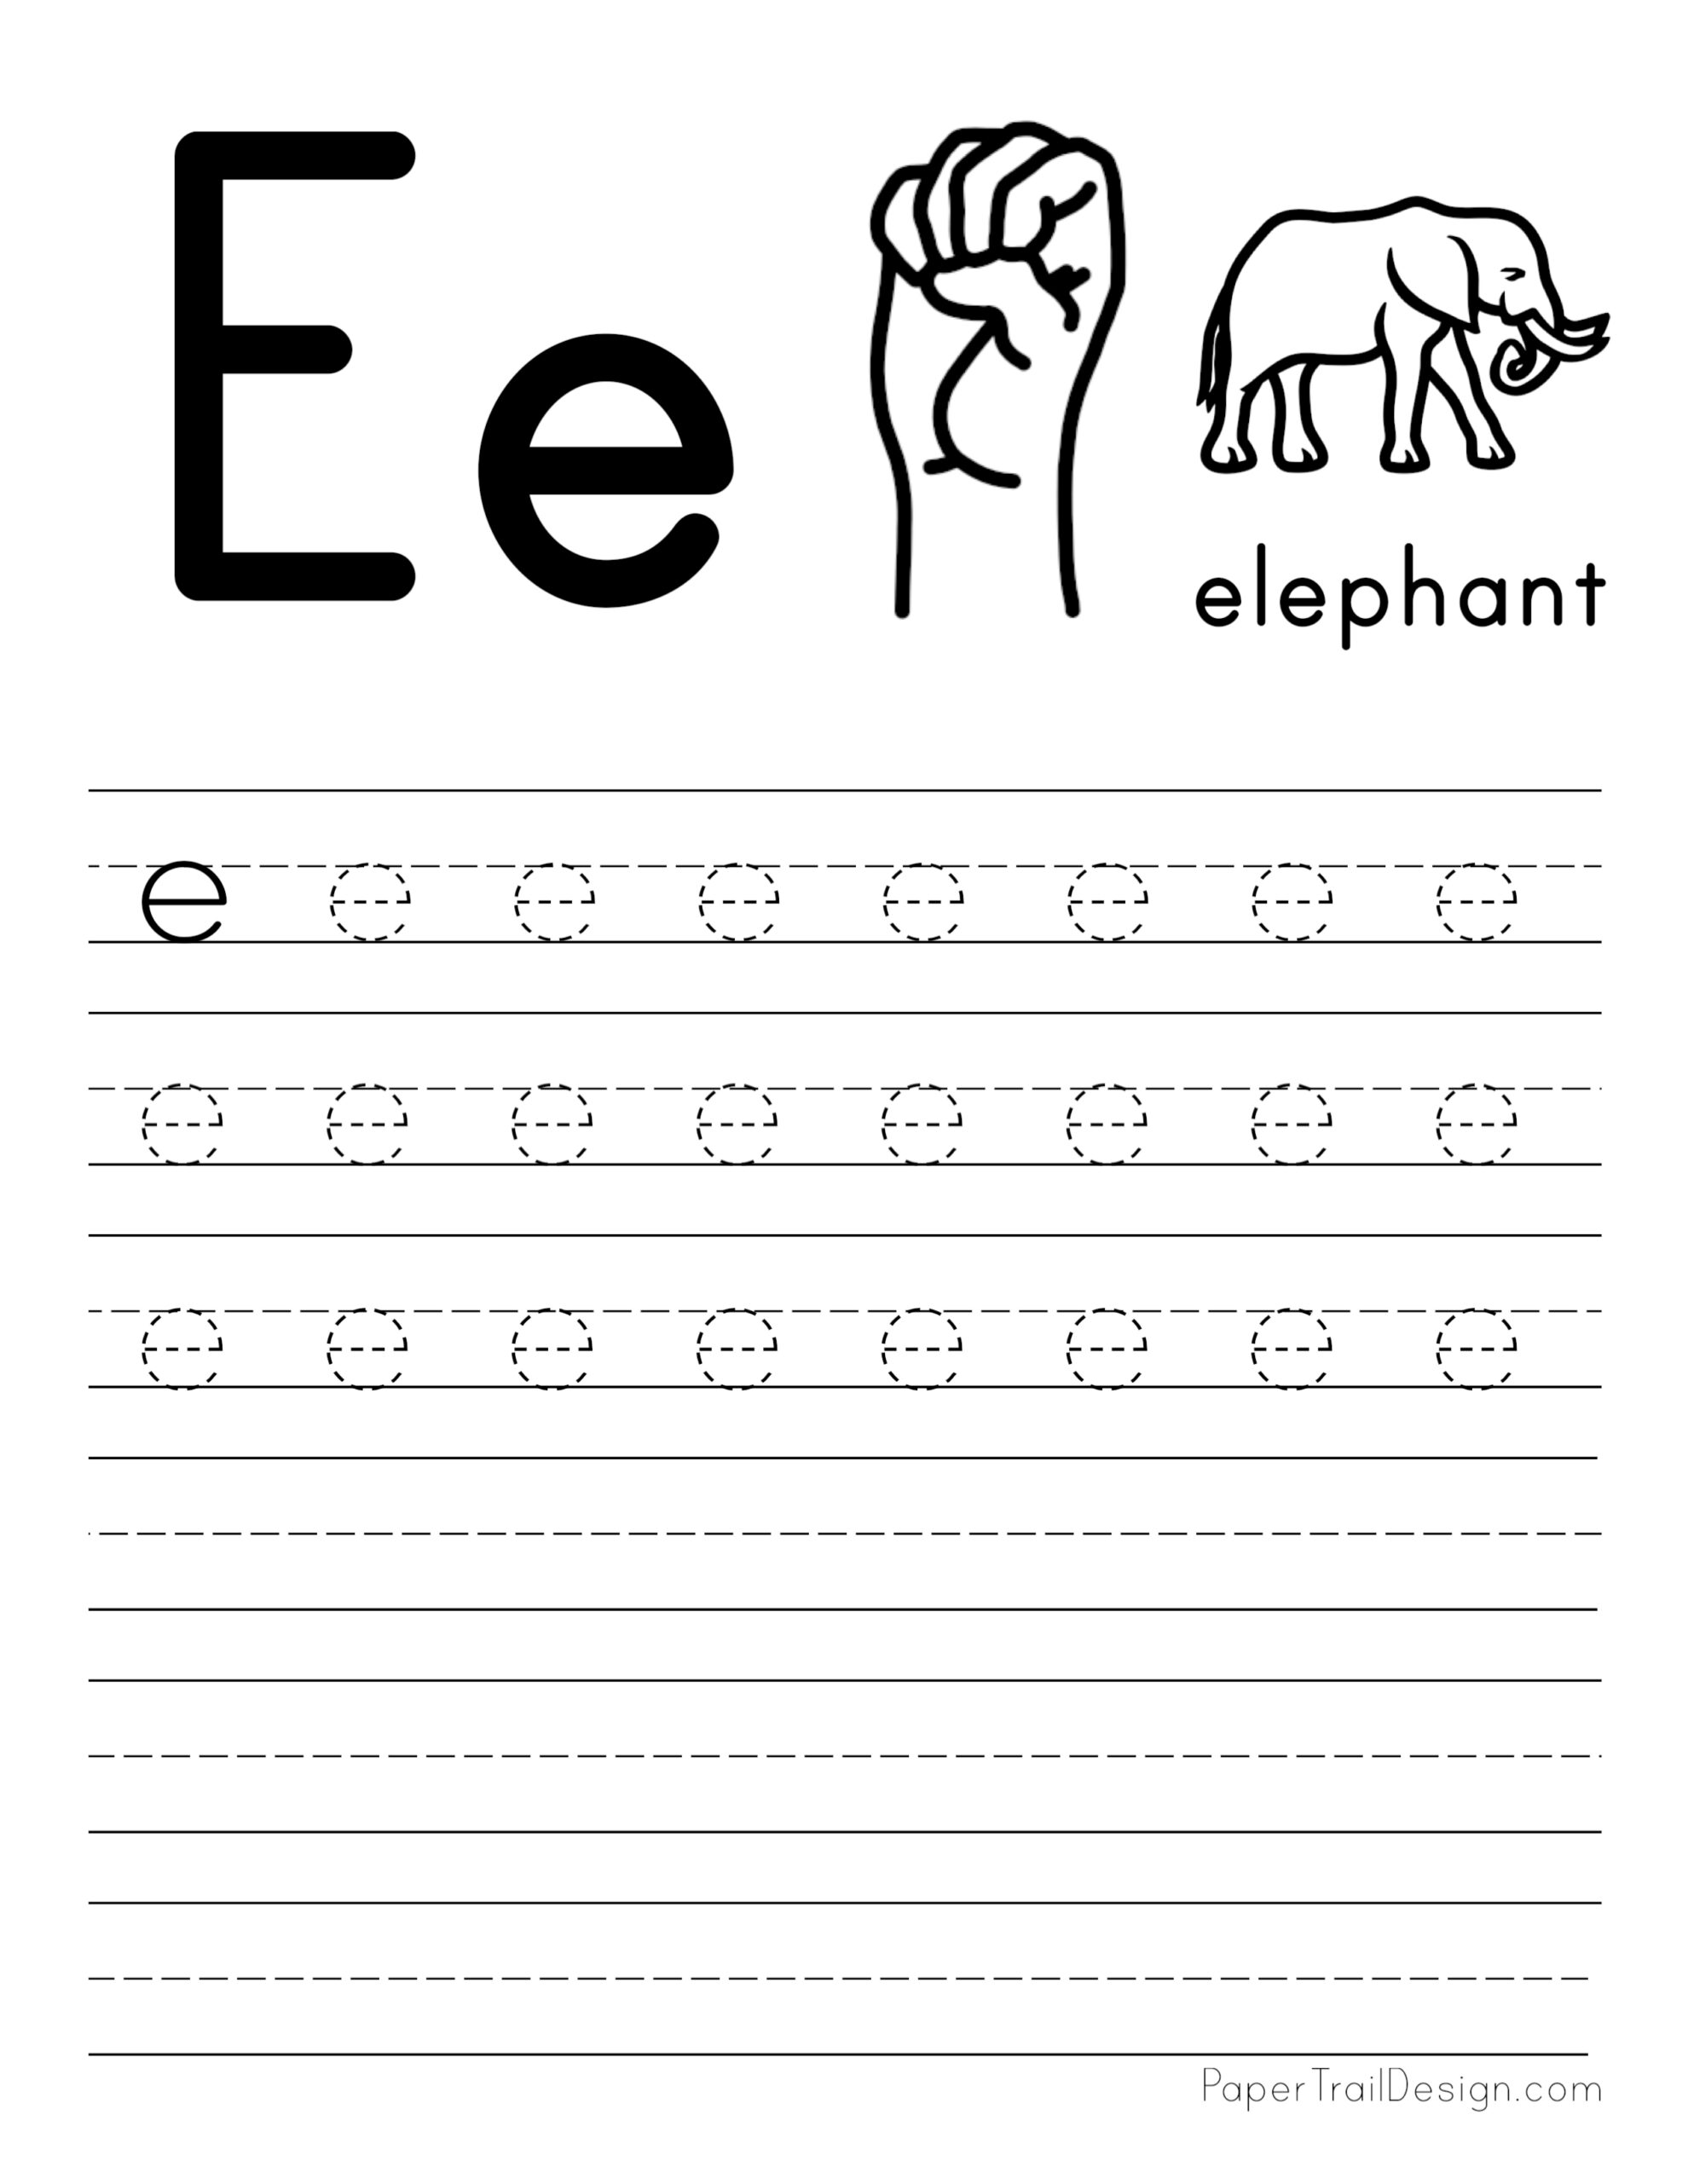 tracing-letter-e-worksheets-for-preschool-a-z-letter-focus-worksheets-vrogue